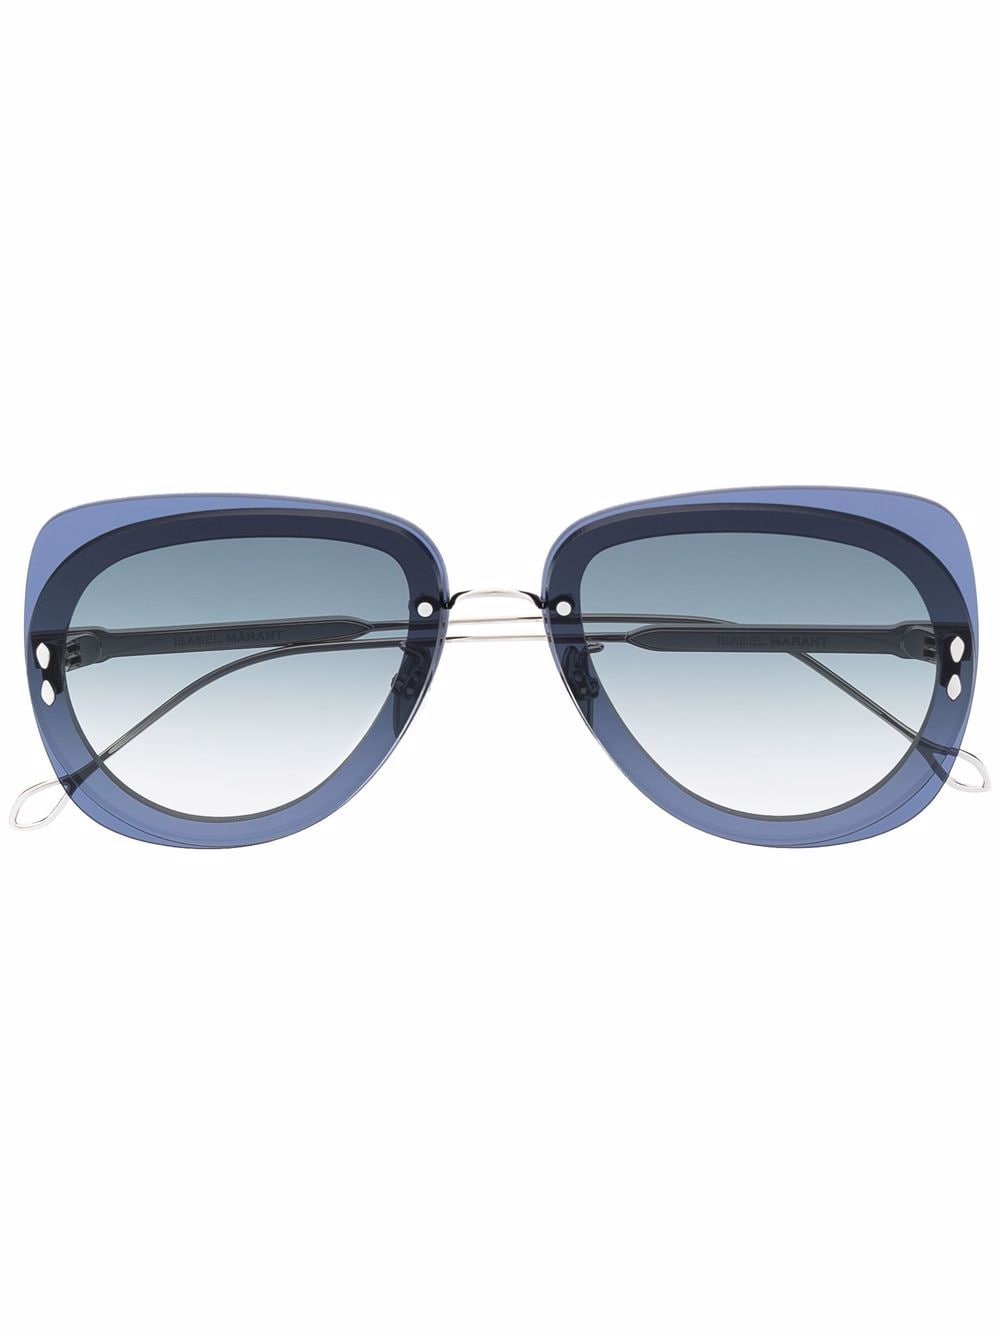 Isabel Marant Eyewear square tinted sunglasses - Silver von Isabel Marant Eyewear